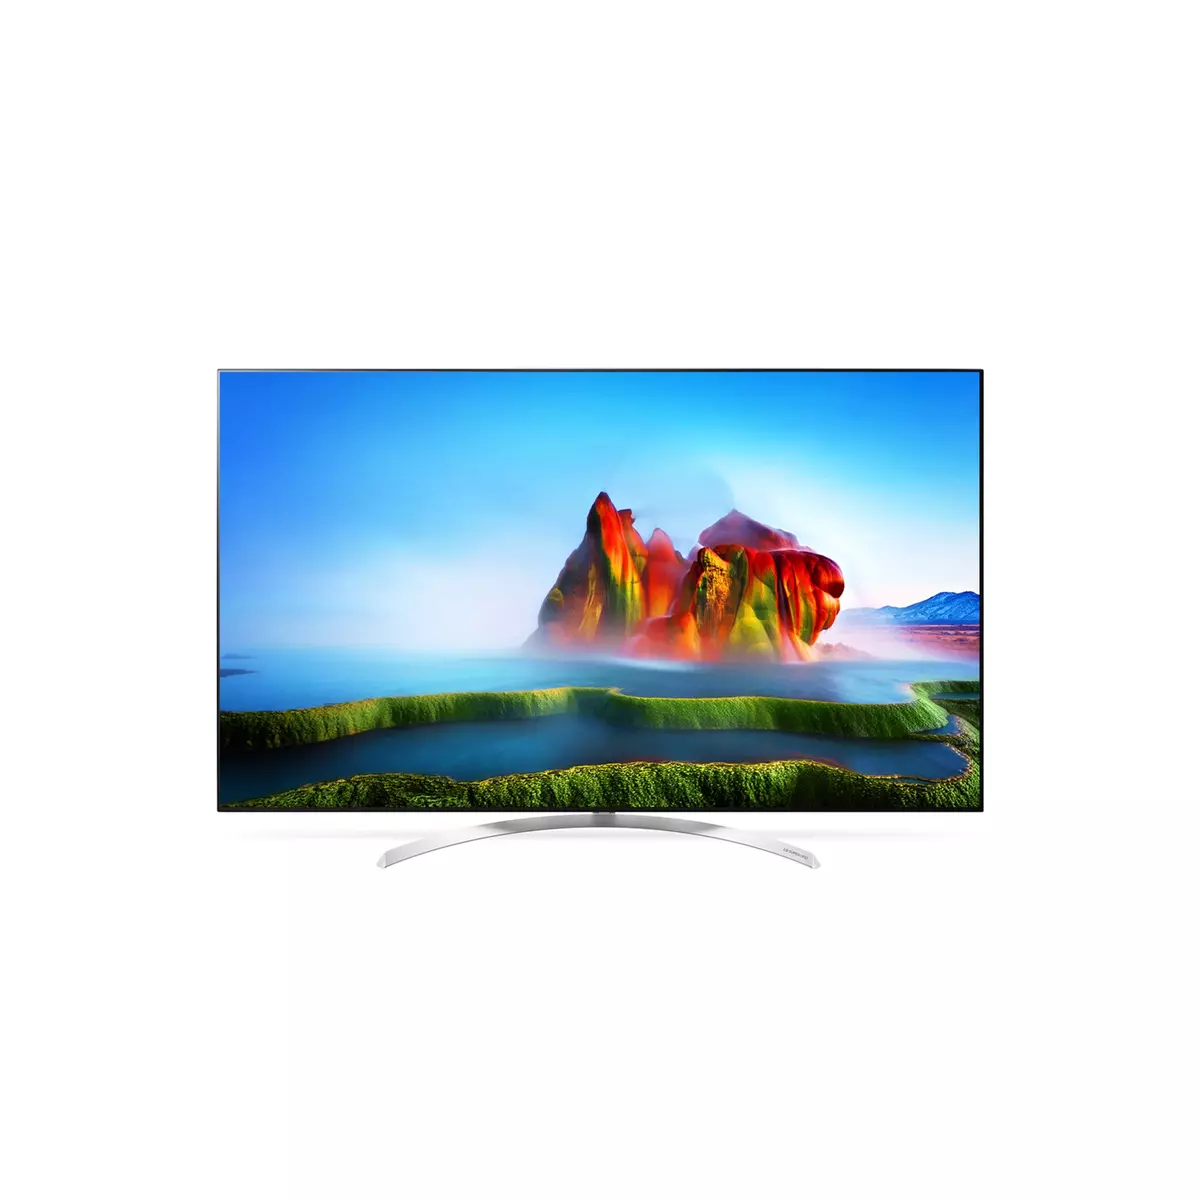 LG 55SJ850V TV LCD Nano Cell 4K UHD 139 cm Smart TV